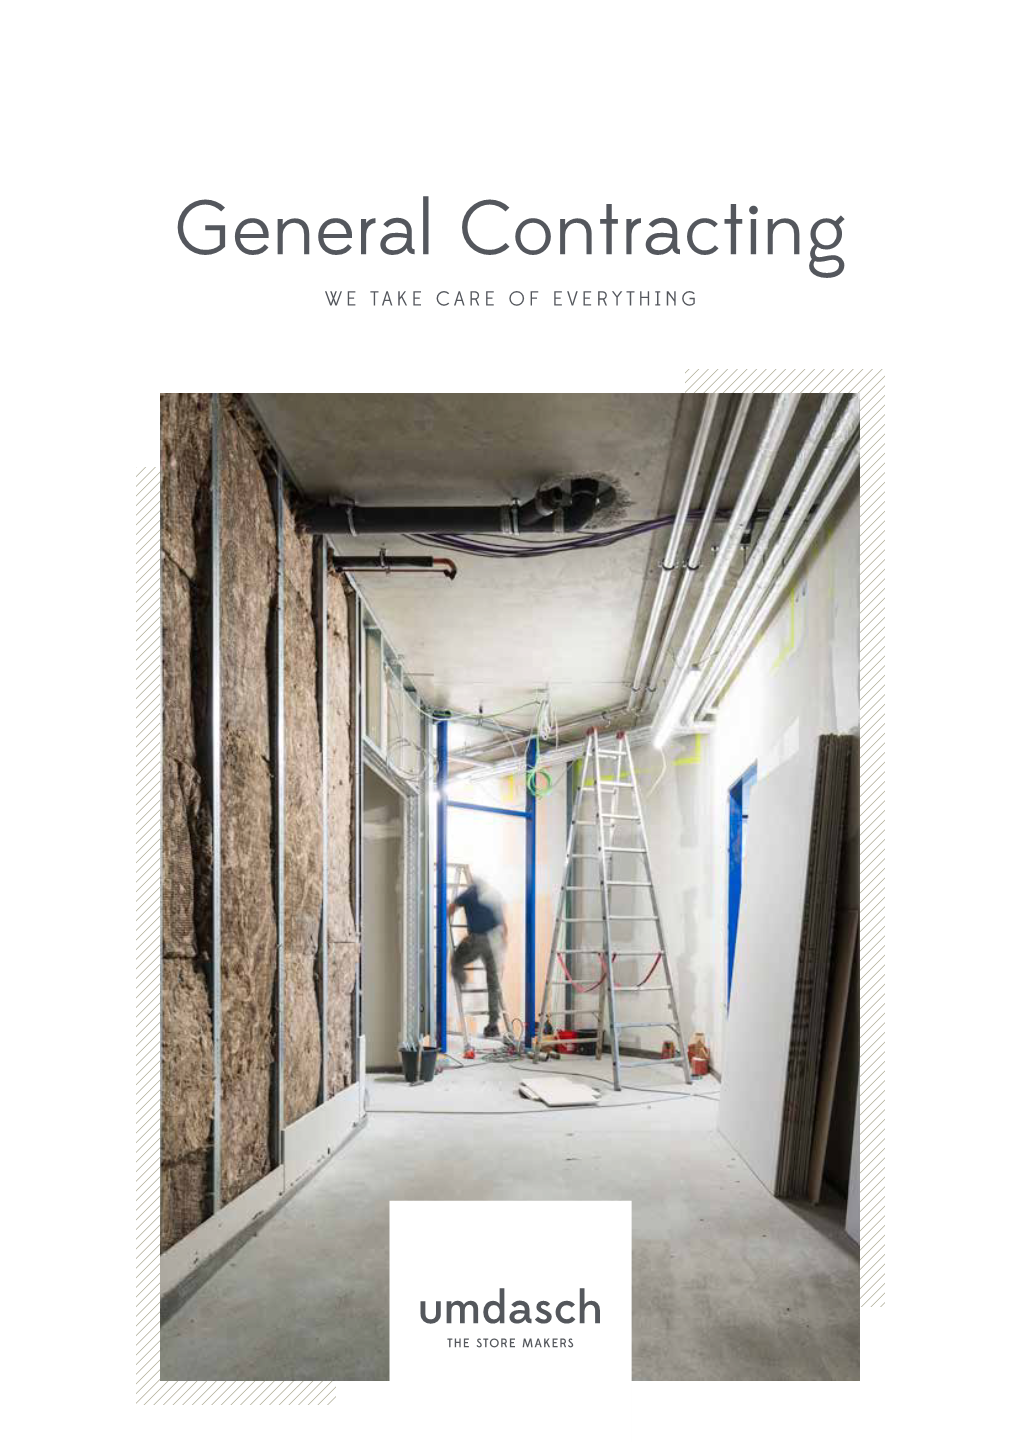 Download General Contracting Brochure